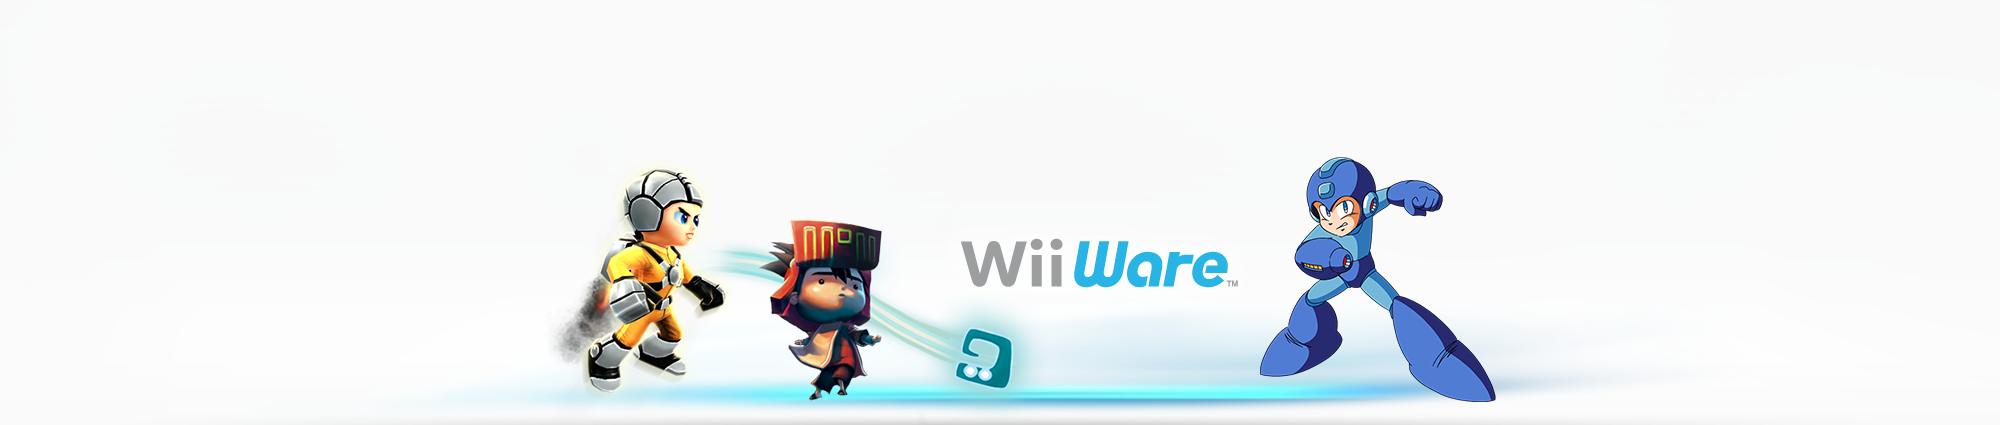 Transferir Jogos na Wii